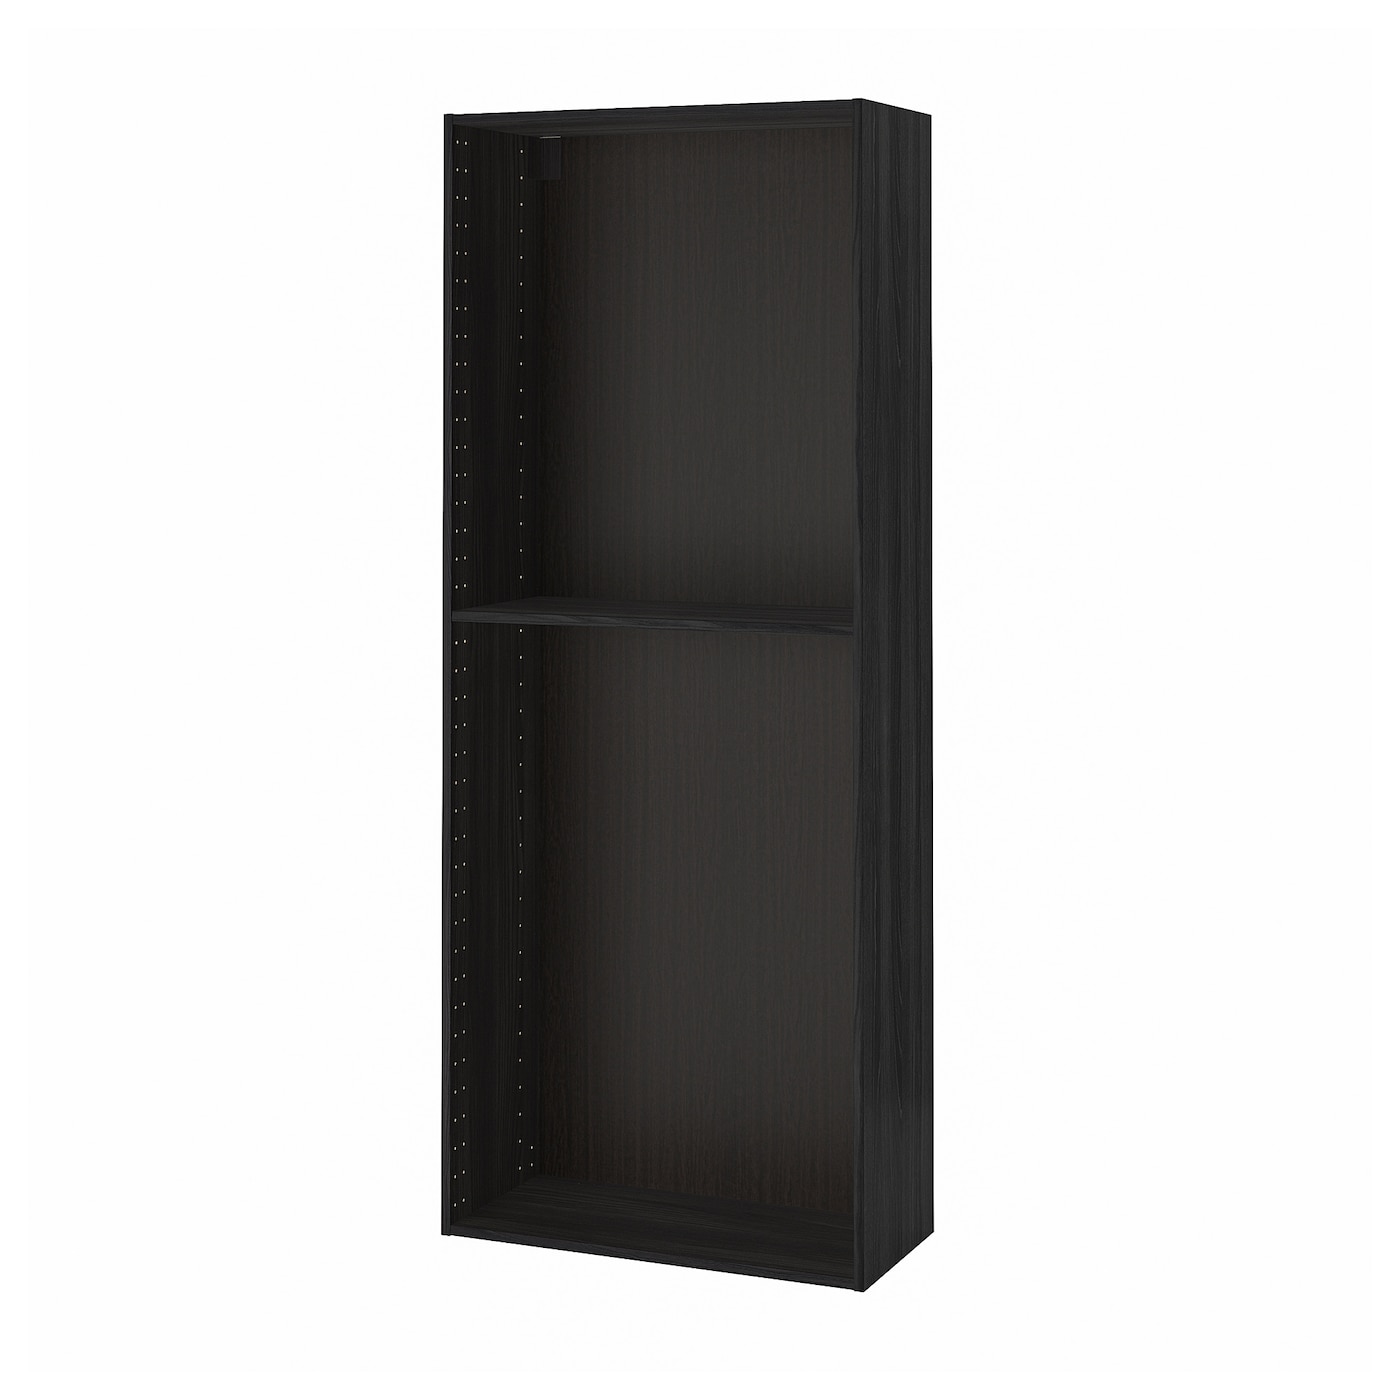 Каркас высокого шкафа - METOD IKEA/МЕТОД ИКЕА, 200х80 см, черный